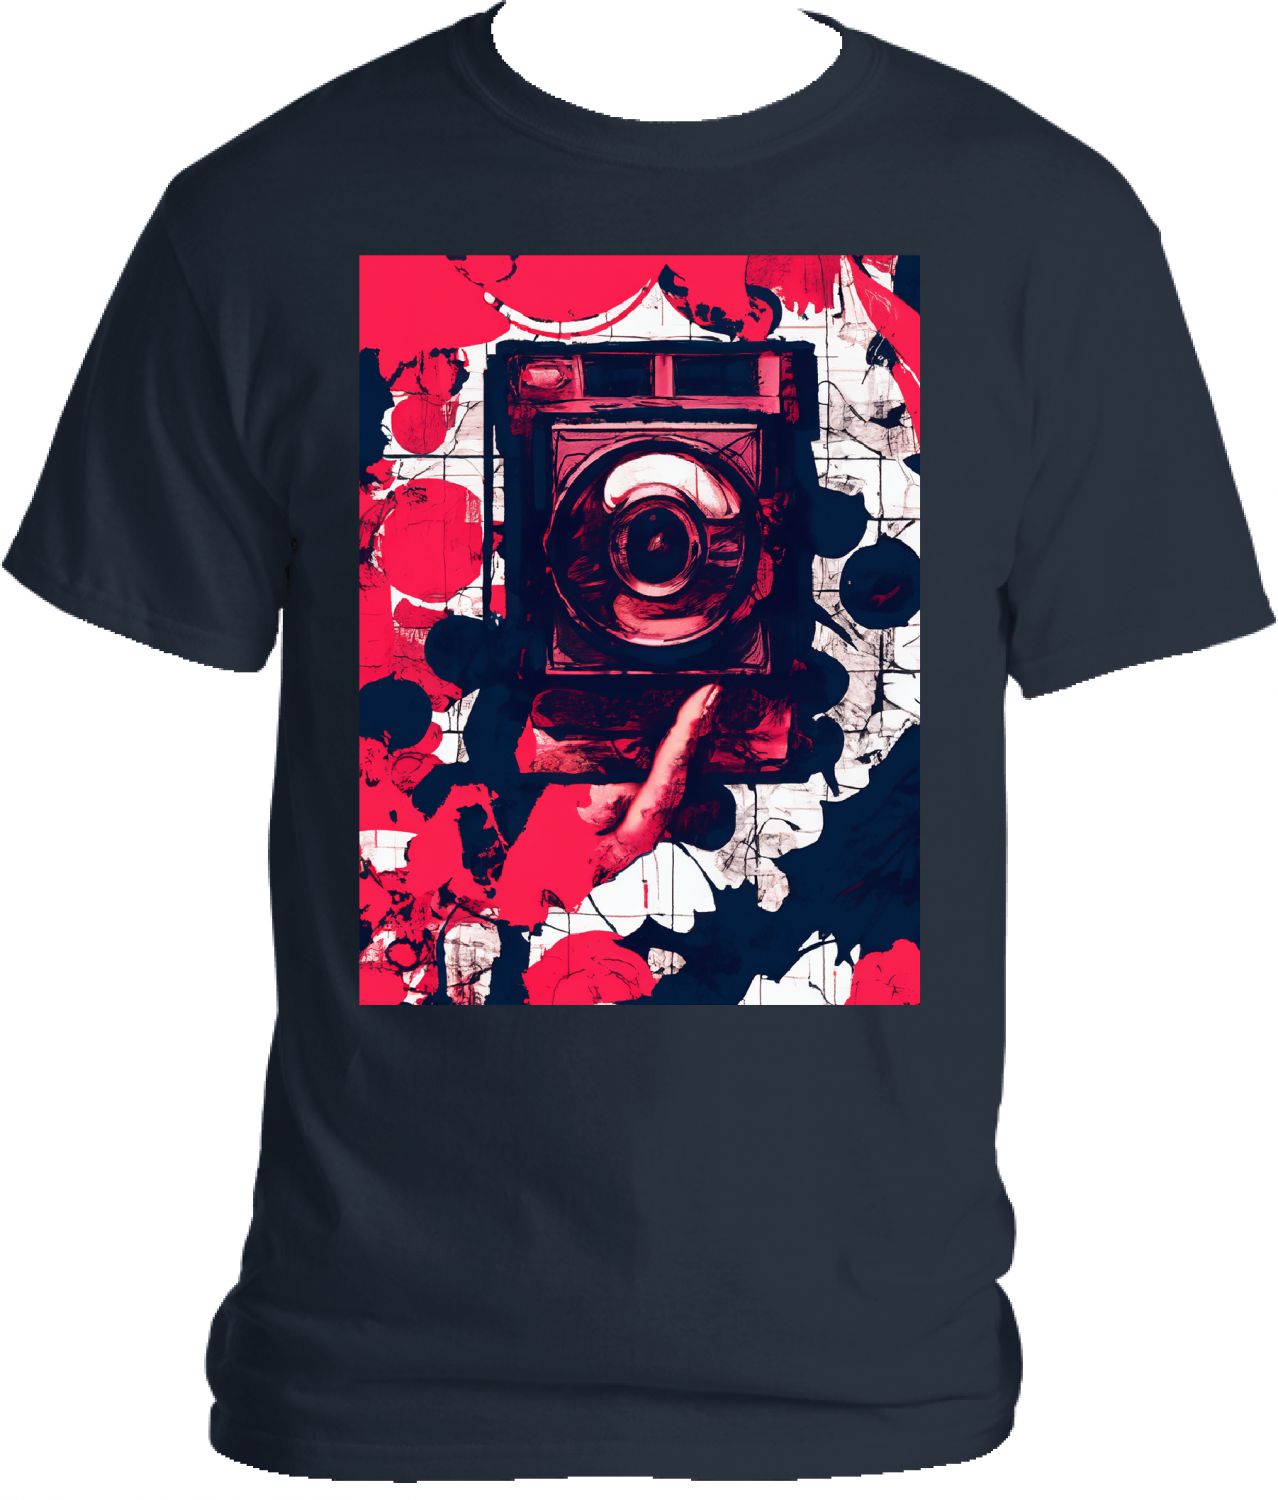 Camera pop art t-shirt